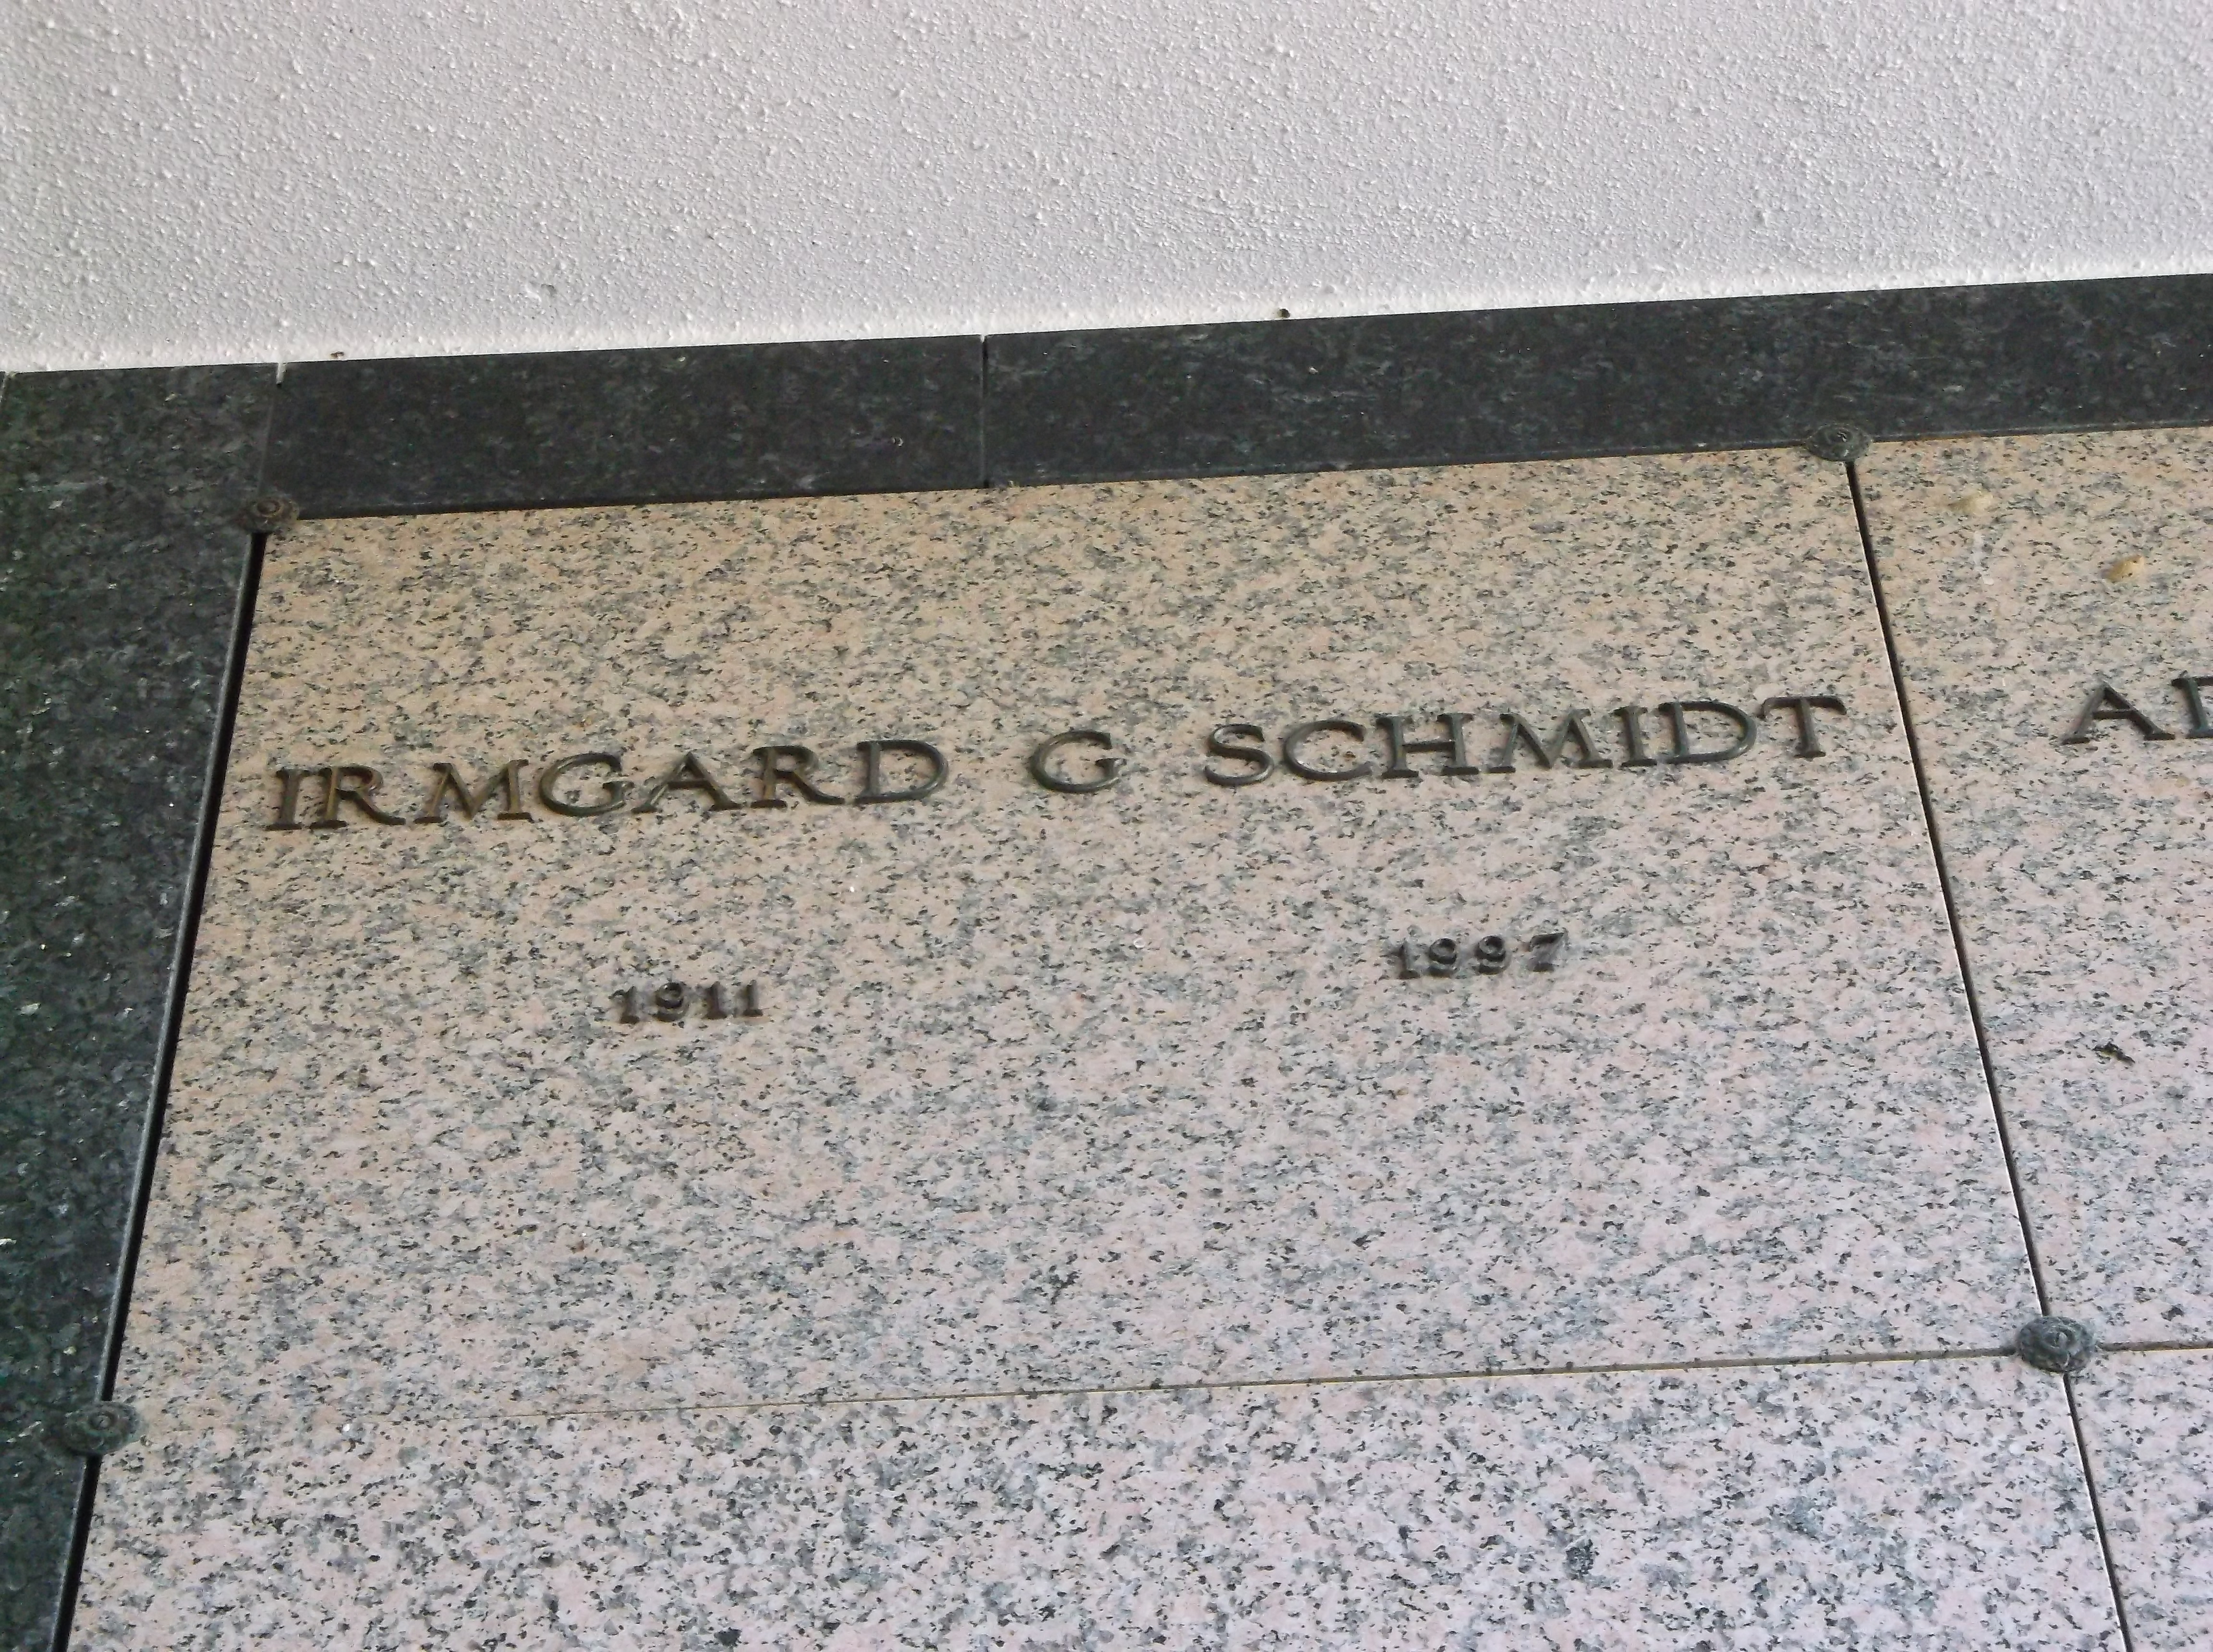 Irmgard G Schmidt